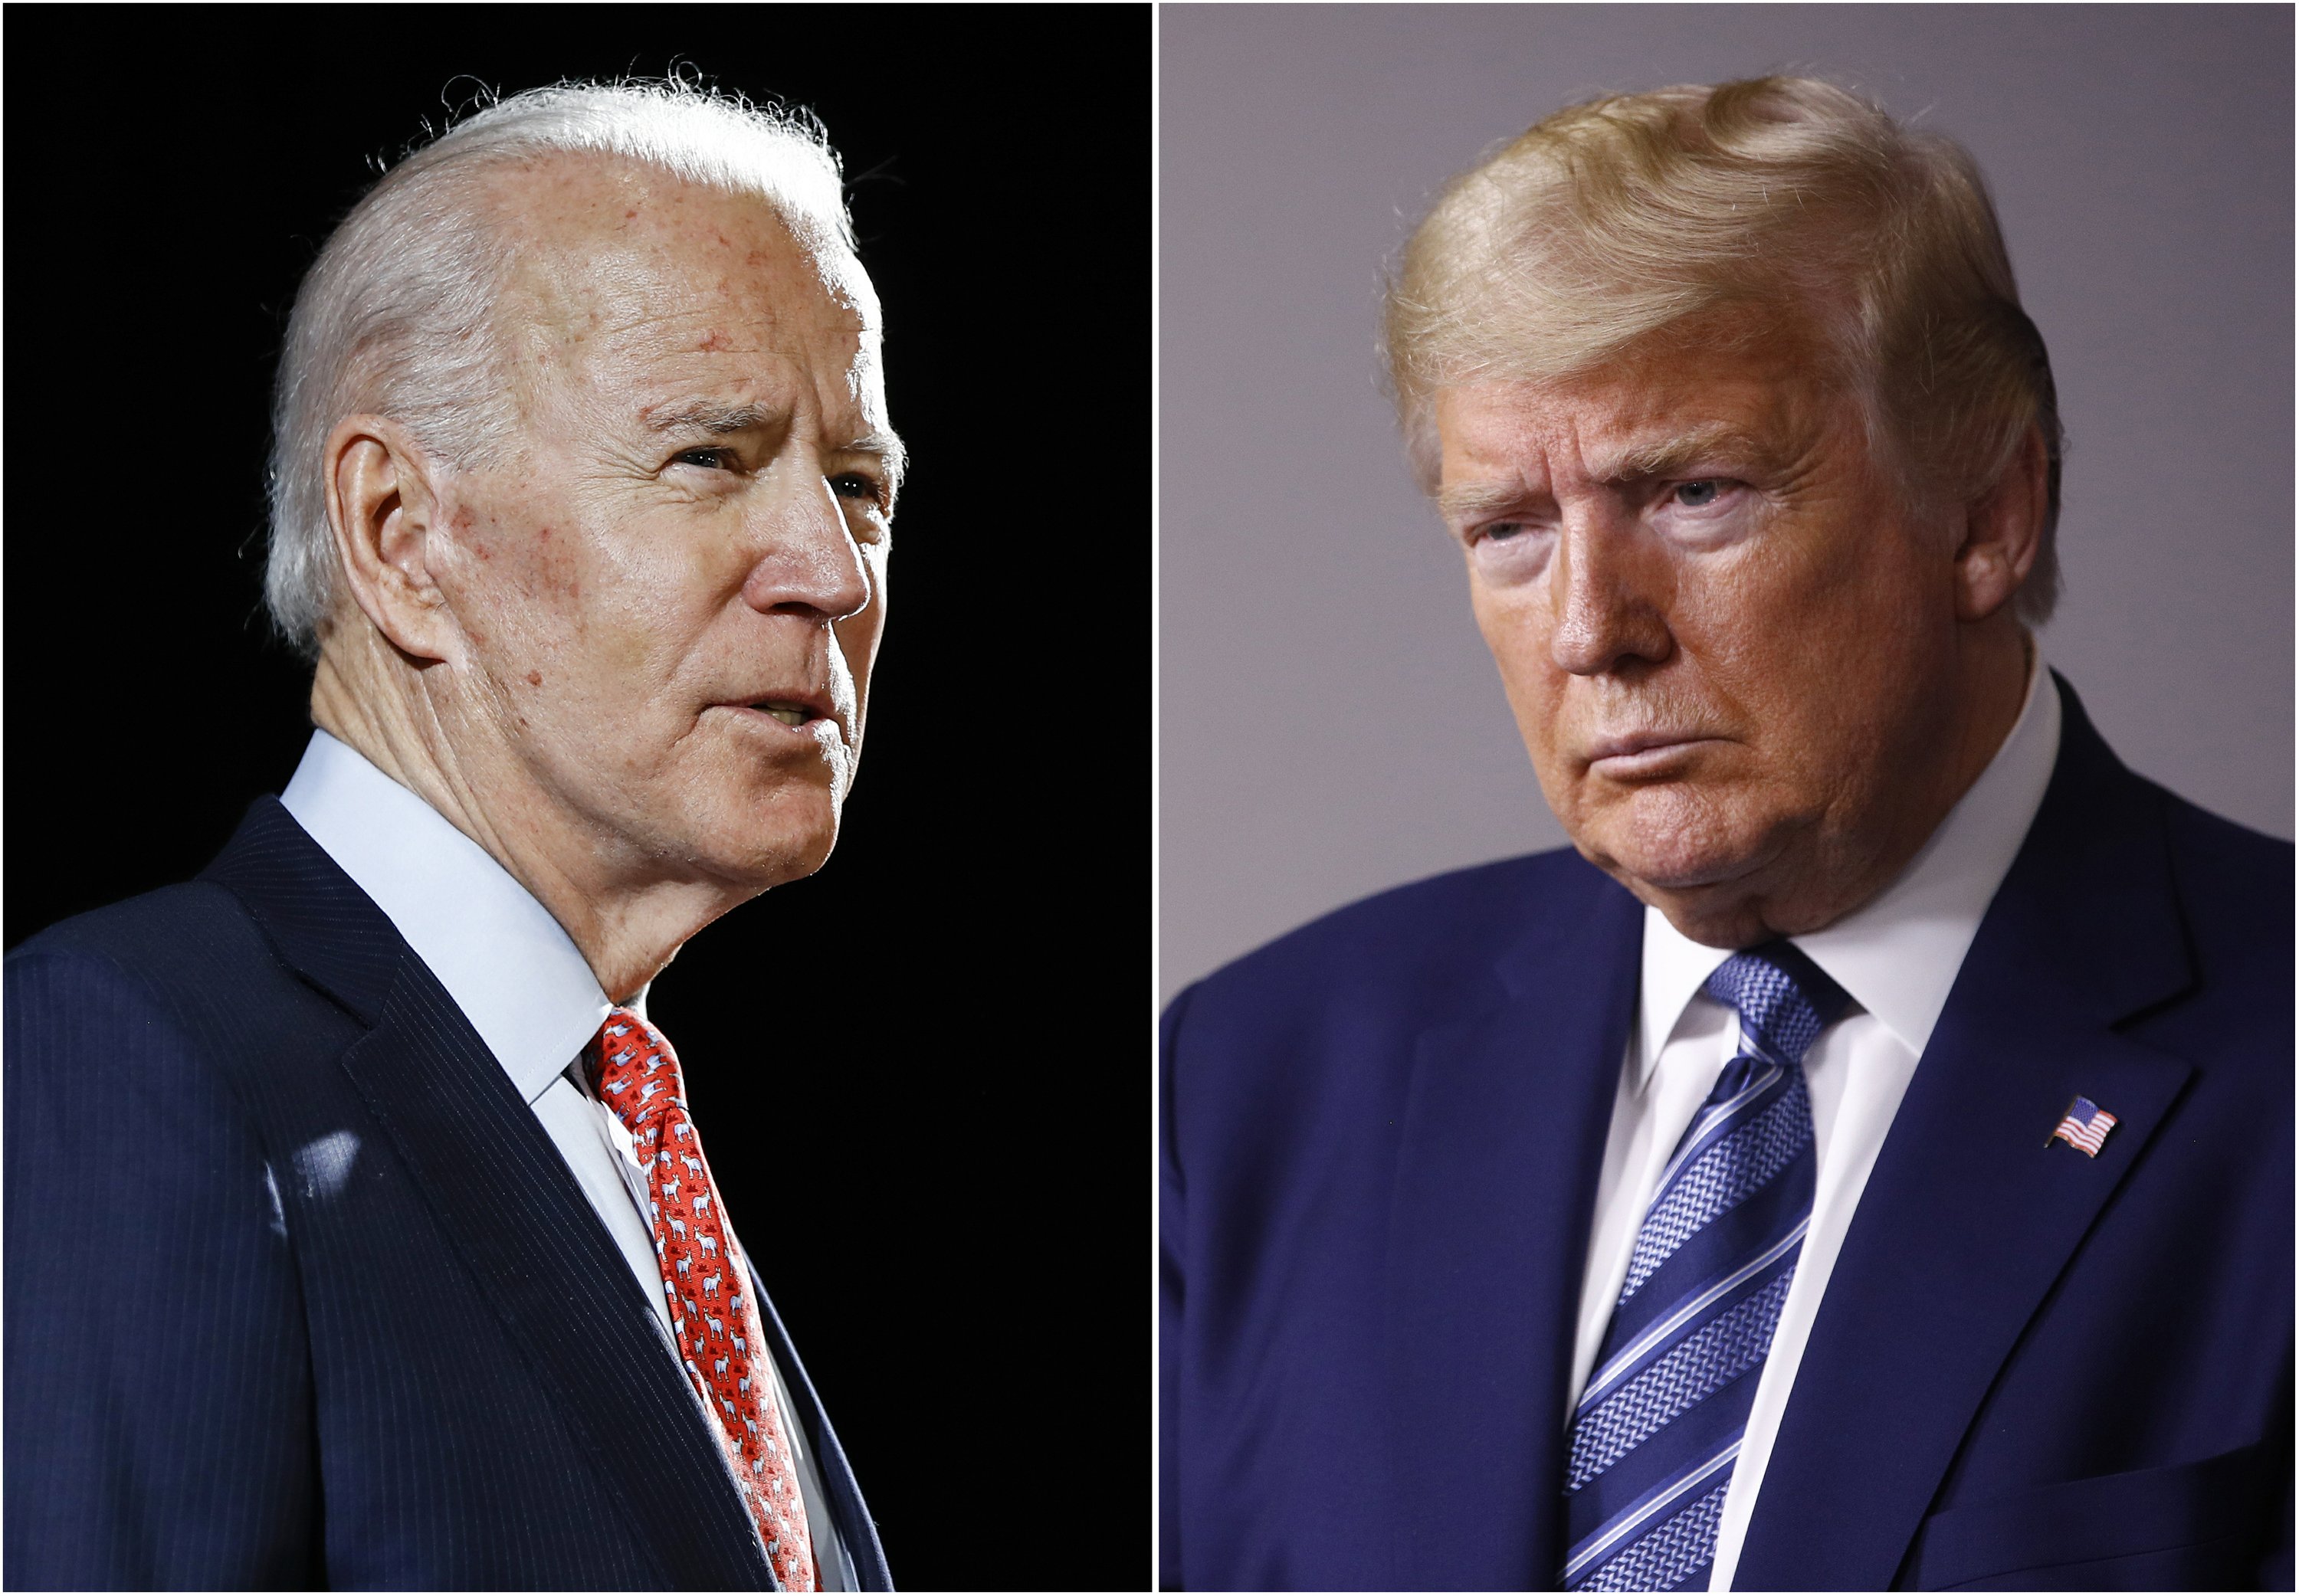 Chưa làm Tổng thống, Joe Biden đã có màn ăn mừng phá hủy 4 năm nhiệm kỳ của chính quyền Donald Trump